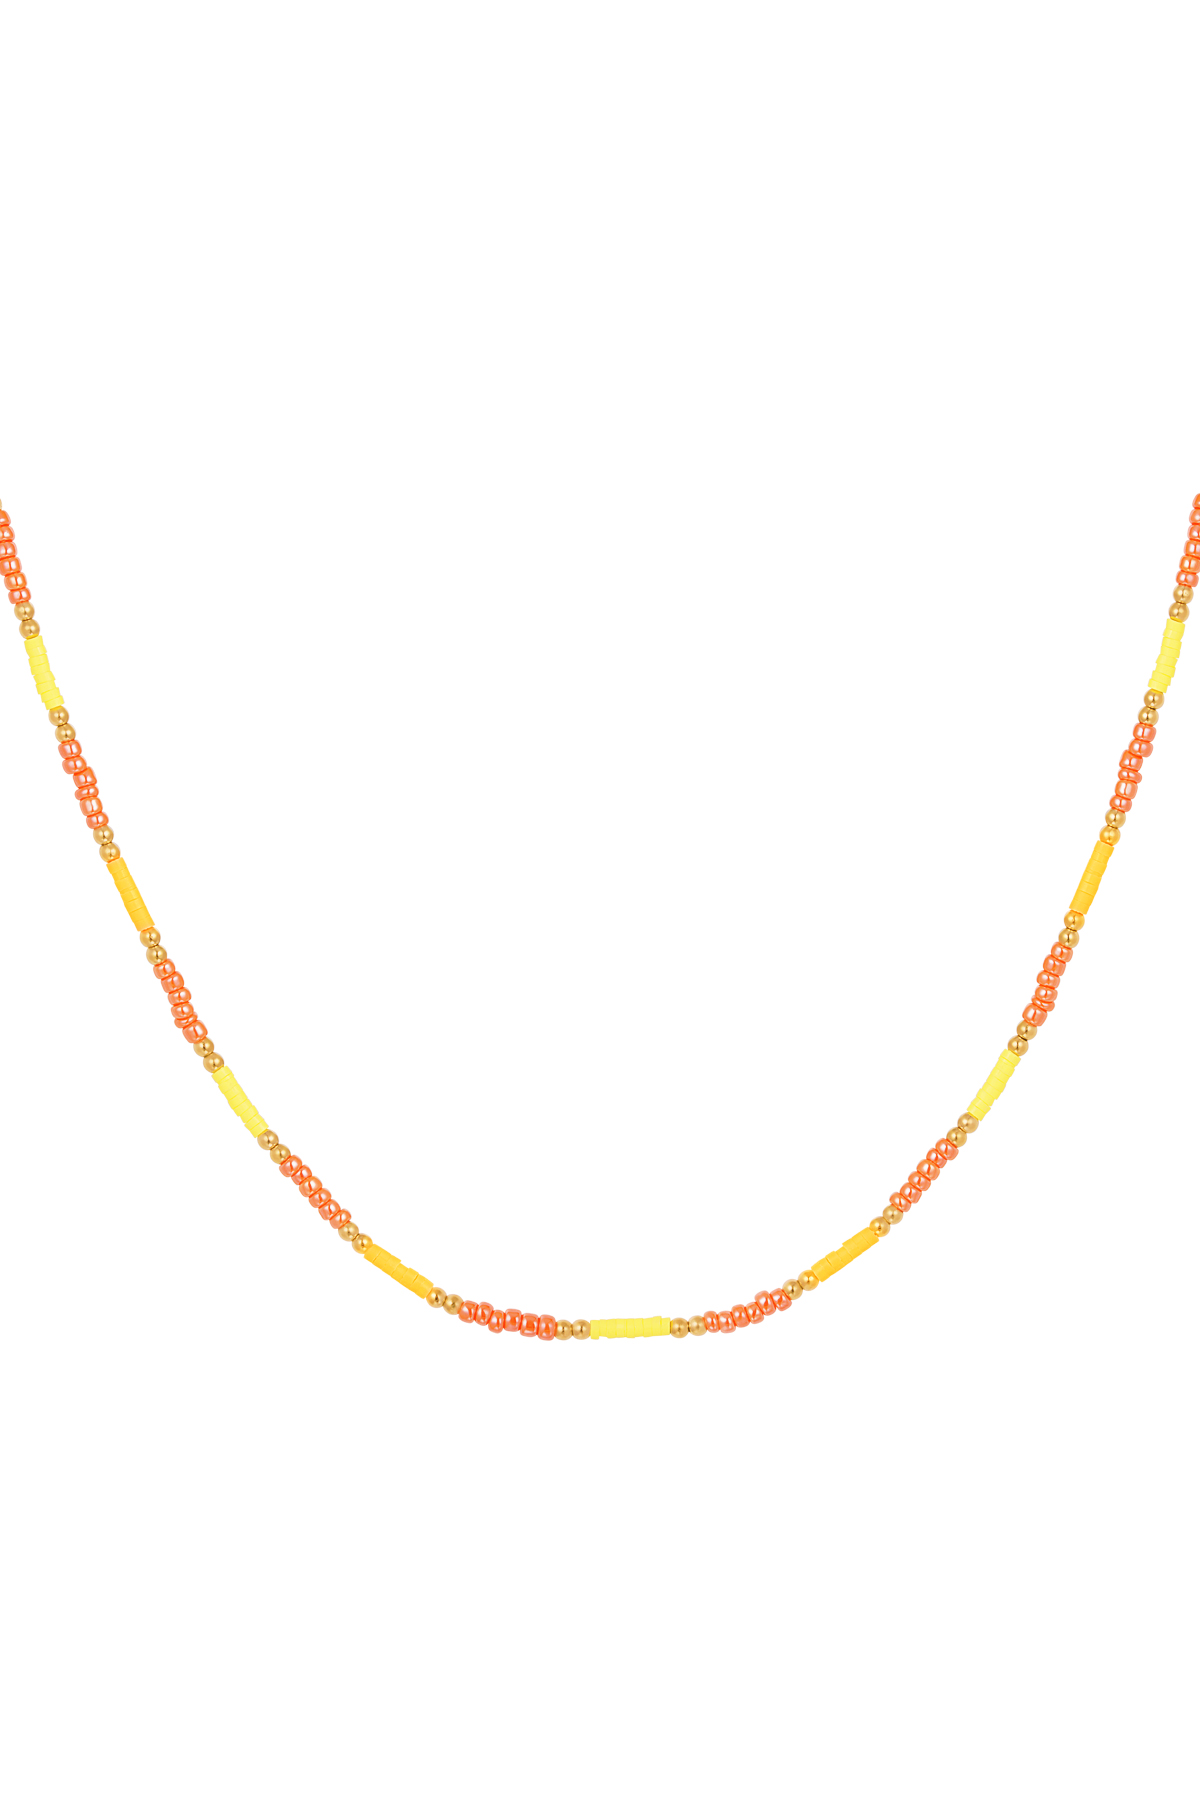 Collana piccole perle colorate - giallo/arancione h5 